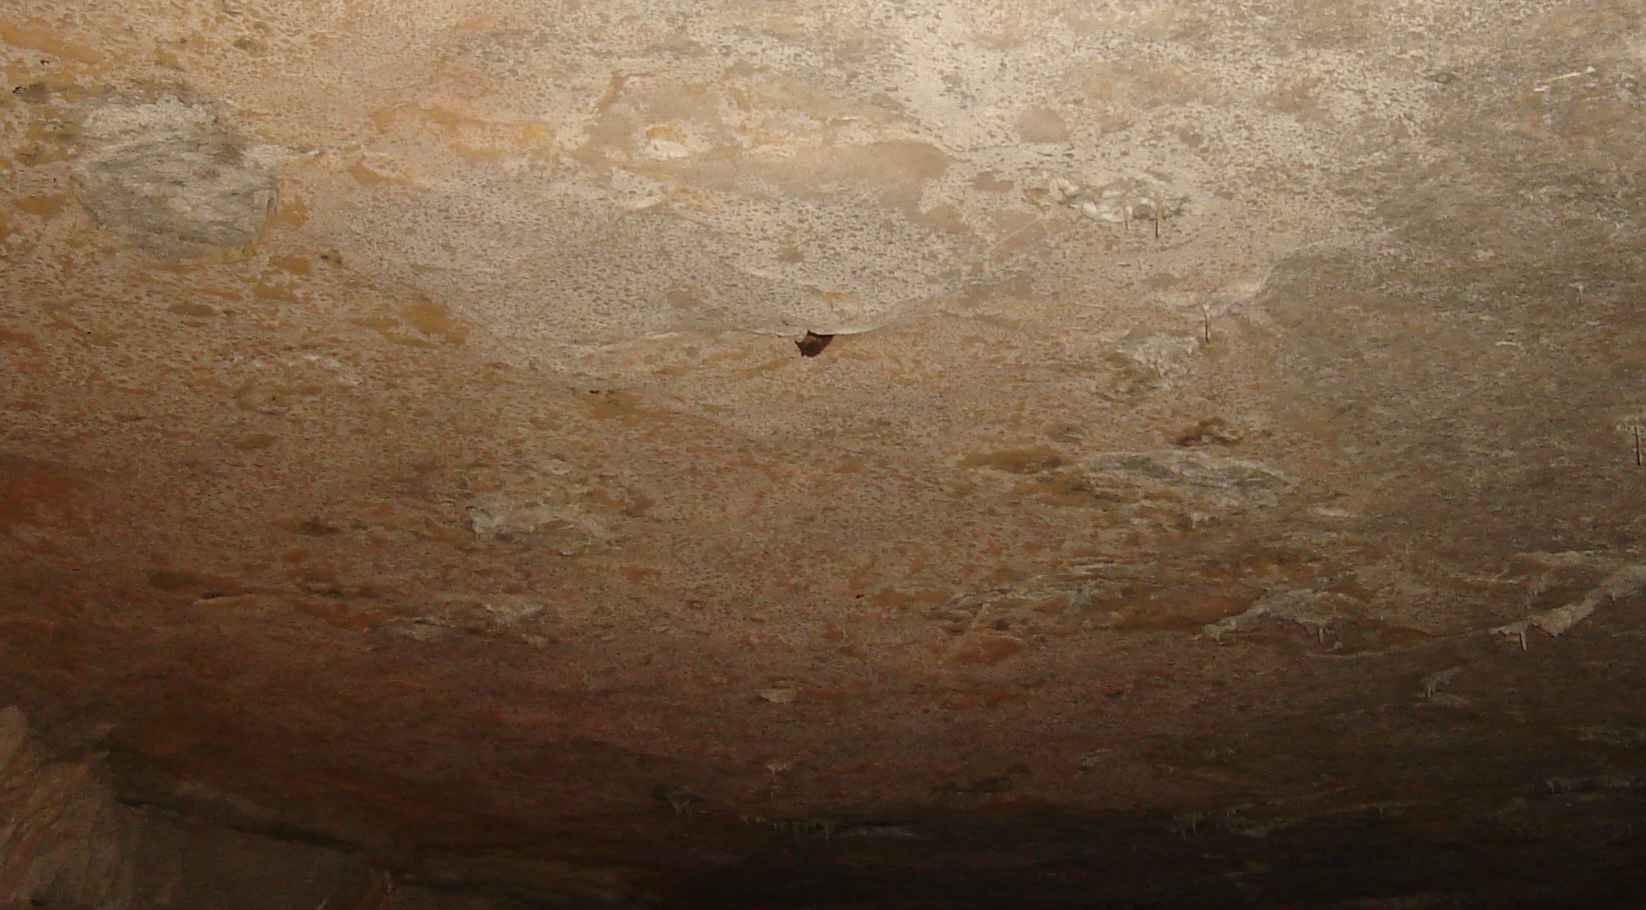 Smallin Cave bat